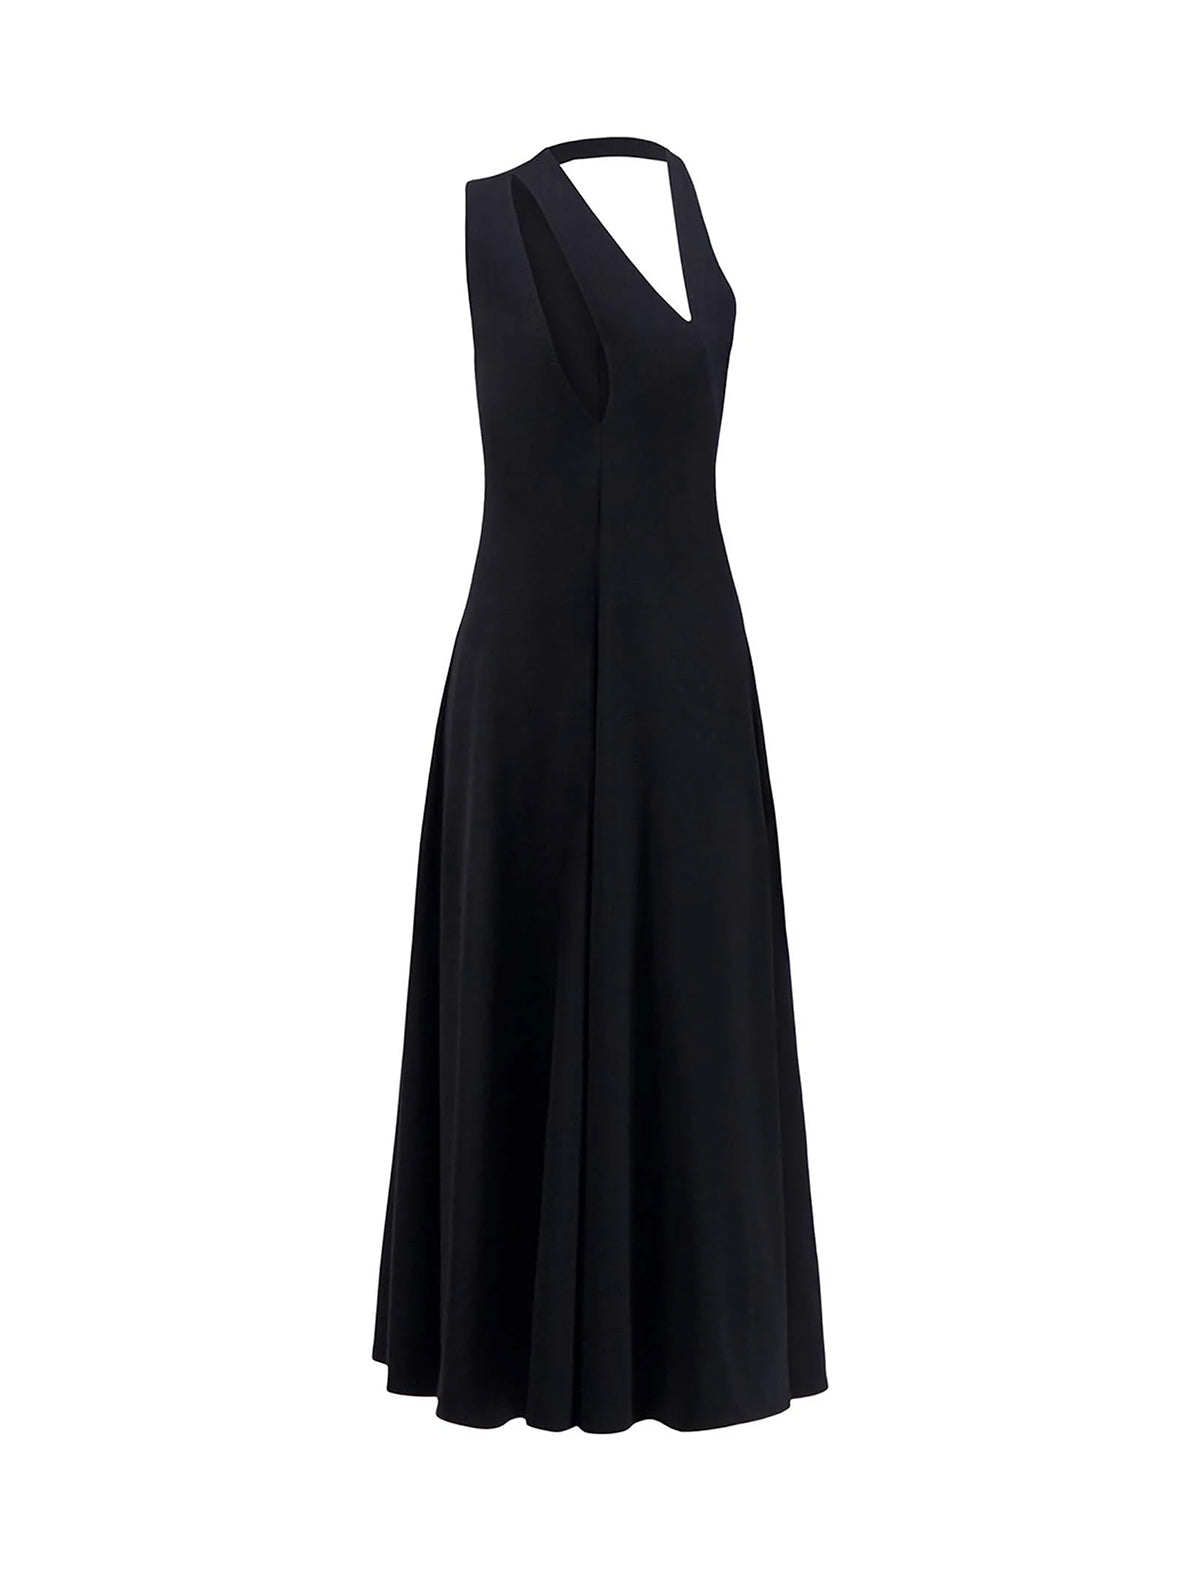 BEAUFILLE Triple Strap Dress in Black